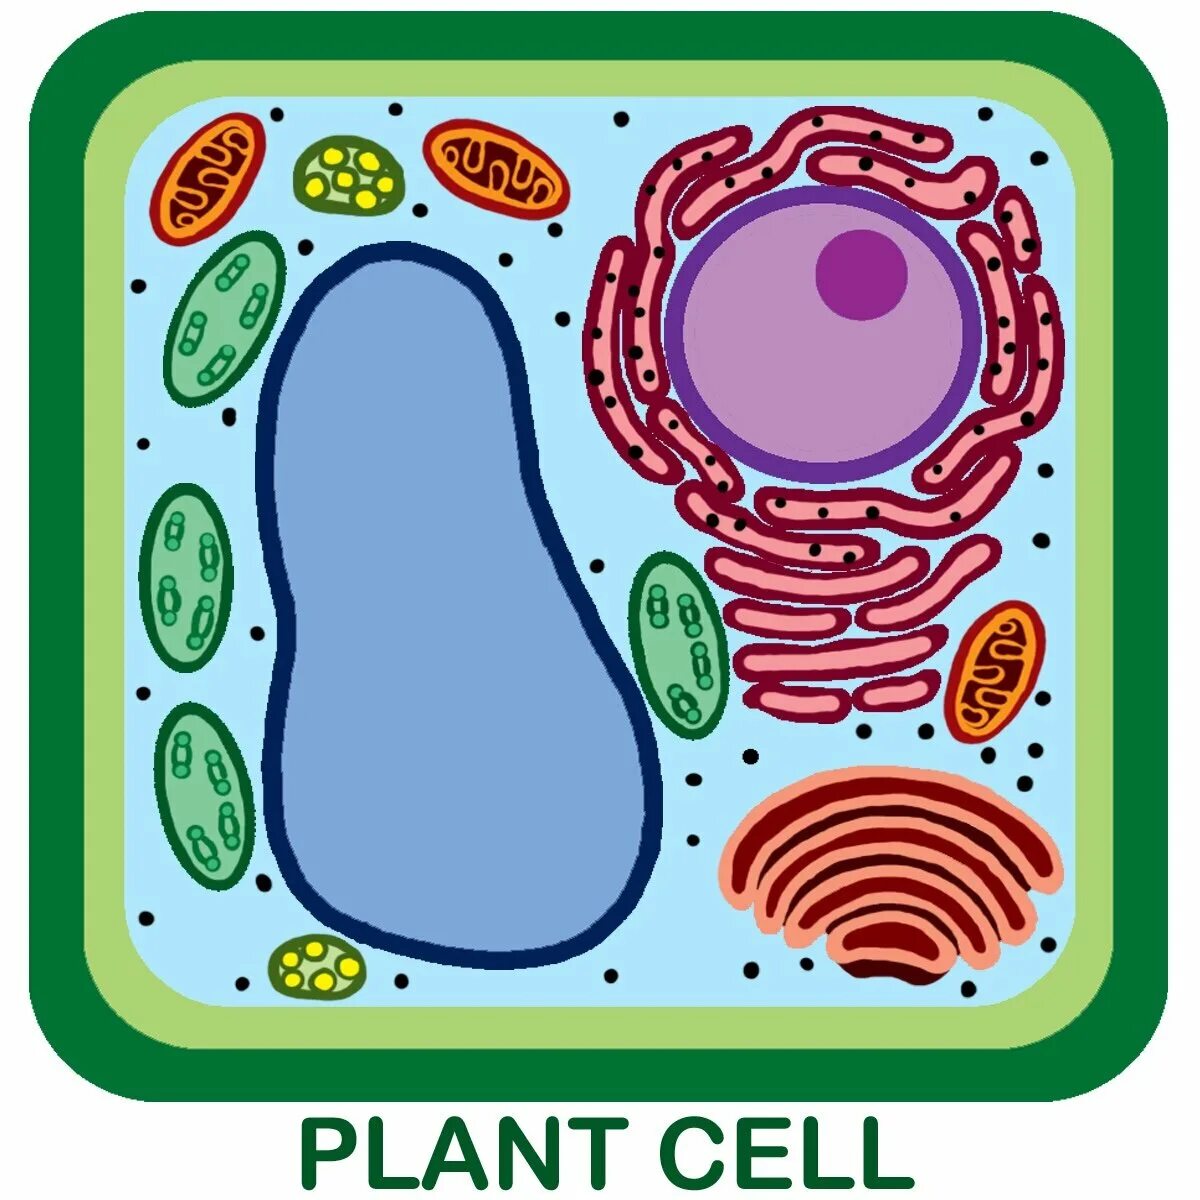 Клетка растения. Клетка бактерии. Растительная клетка. Клетка растения рисунок. Рисунок модели клетки